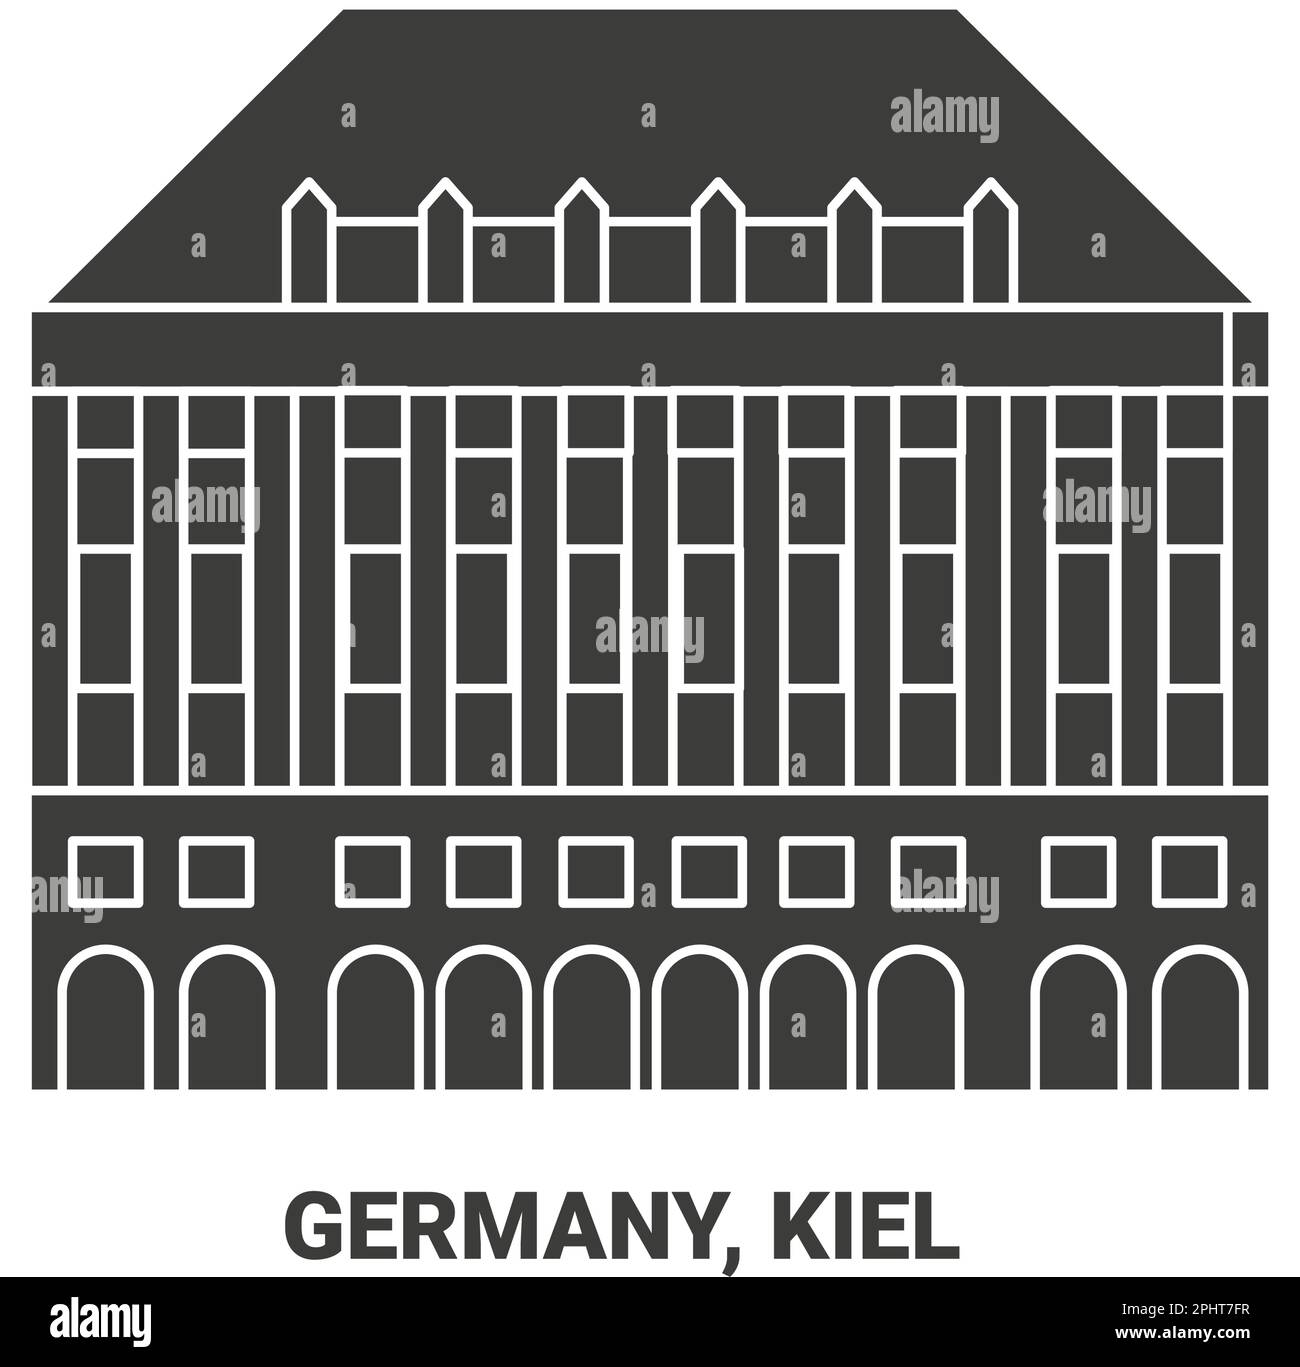 Germany, Kiel travel landmark vector illustration Stock Vector